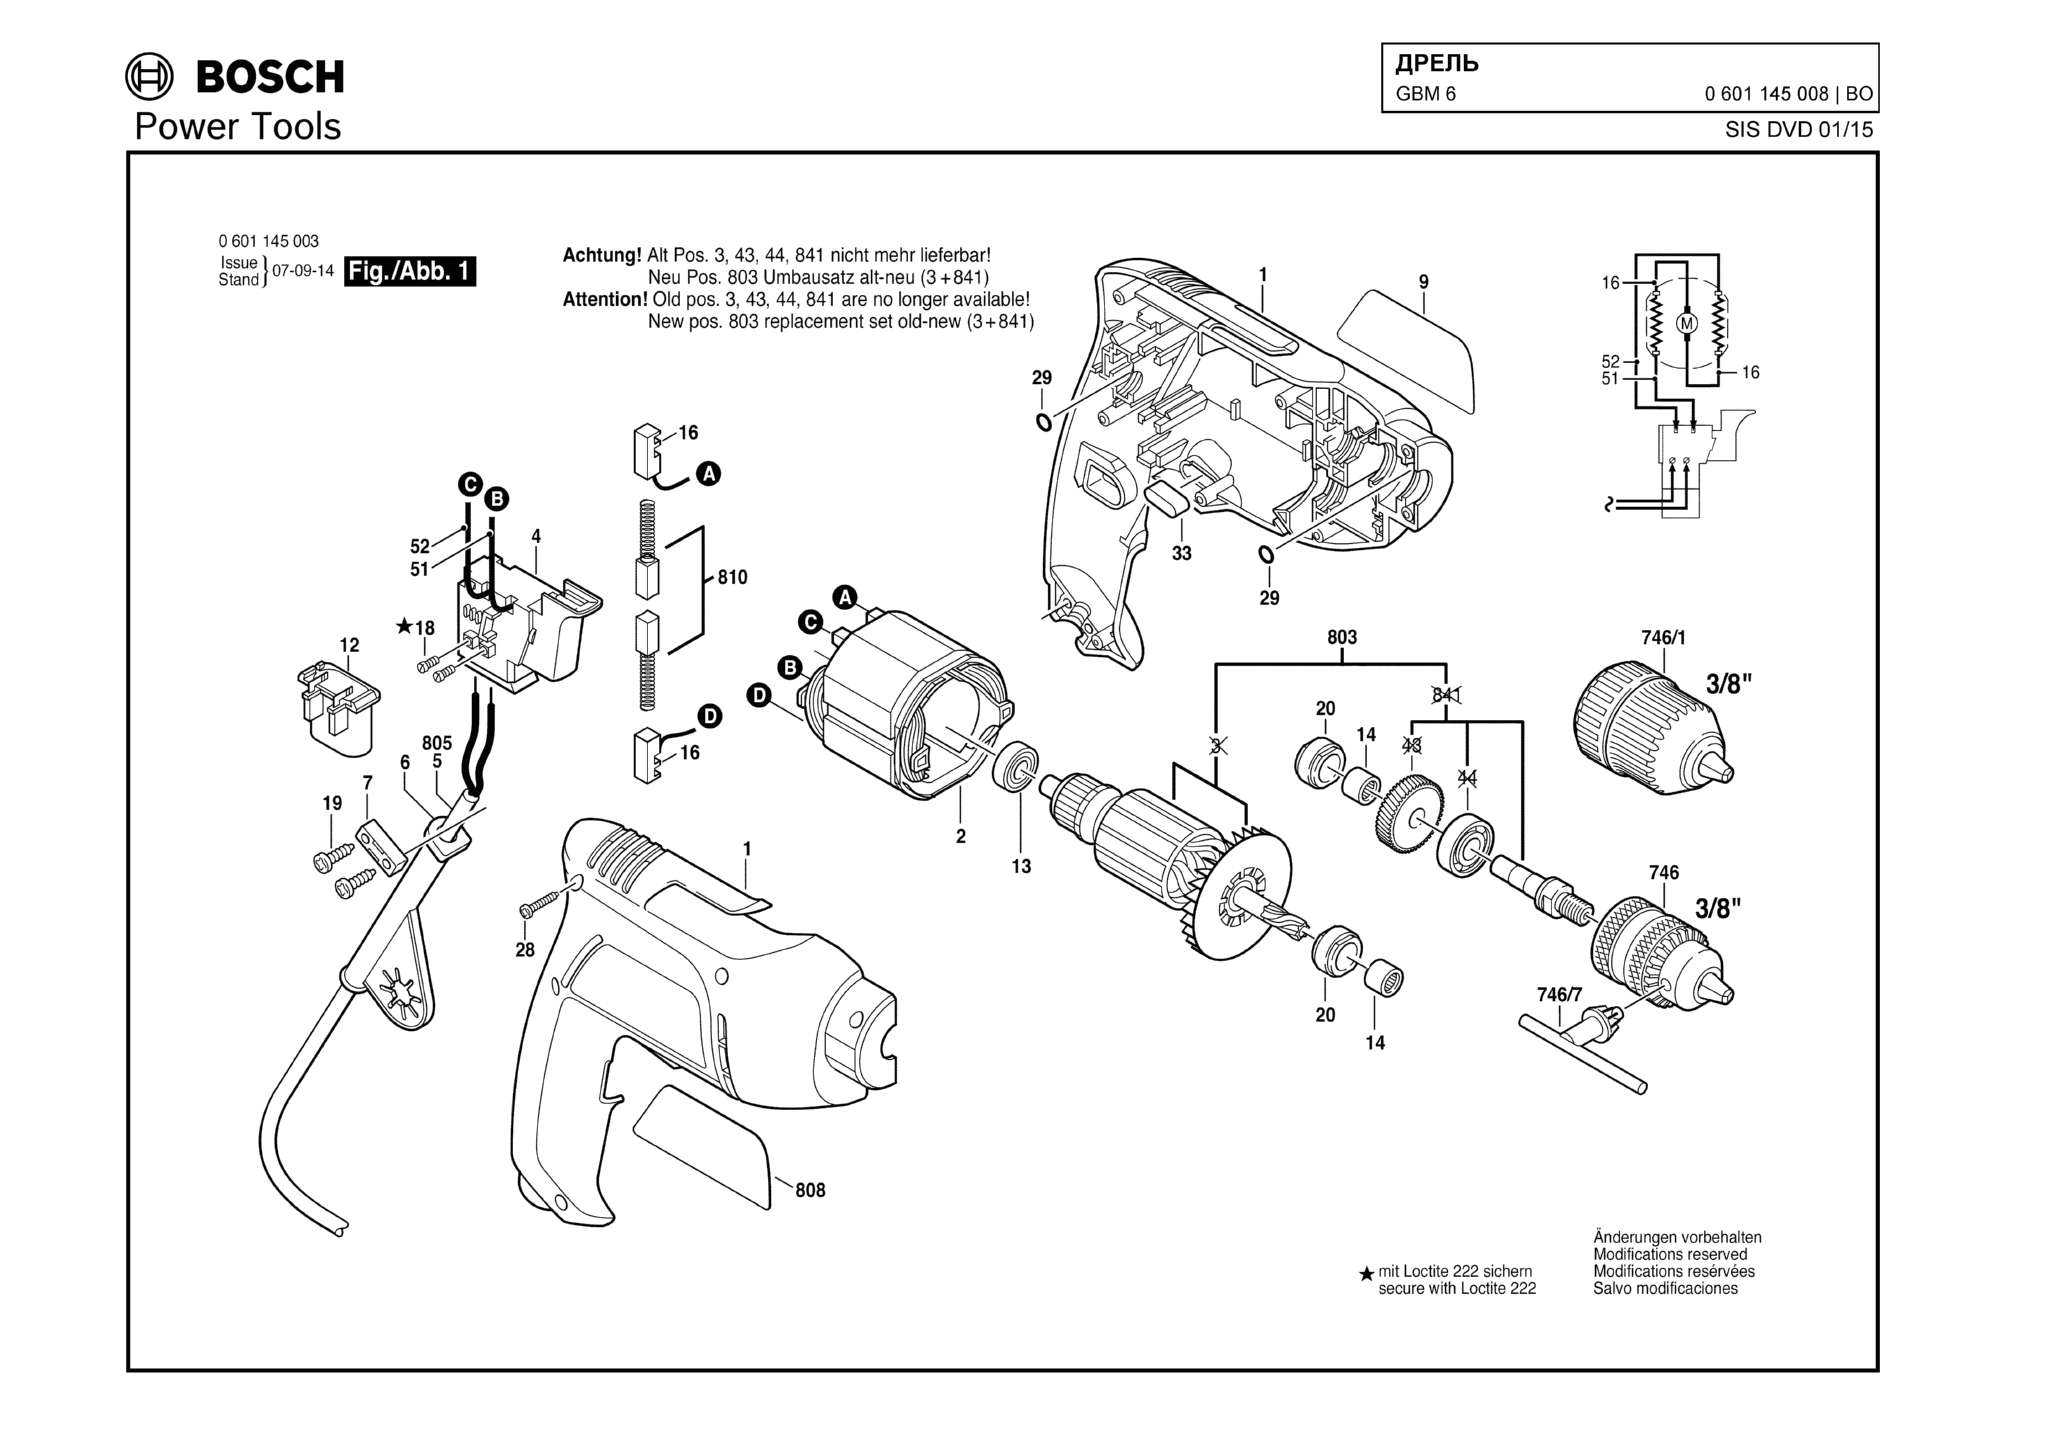 Запчасти, схема и деталировка Bosch GBM 6 (ТИП 0601145008)